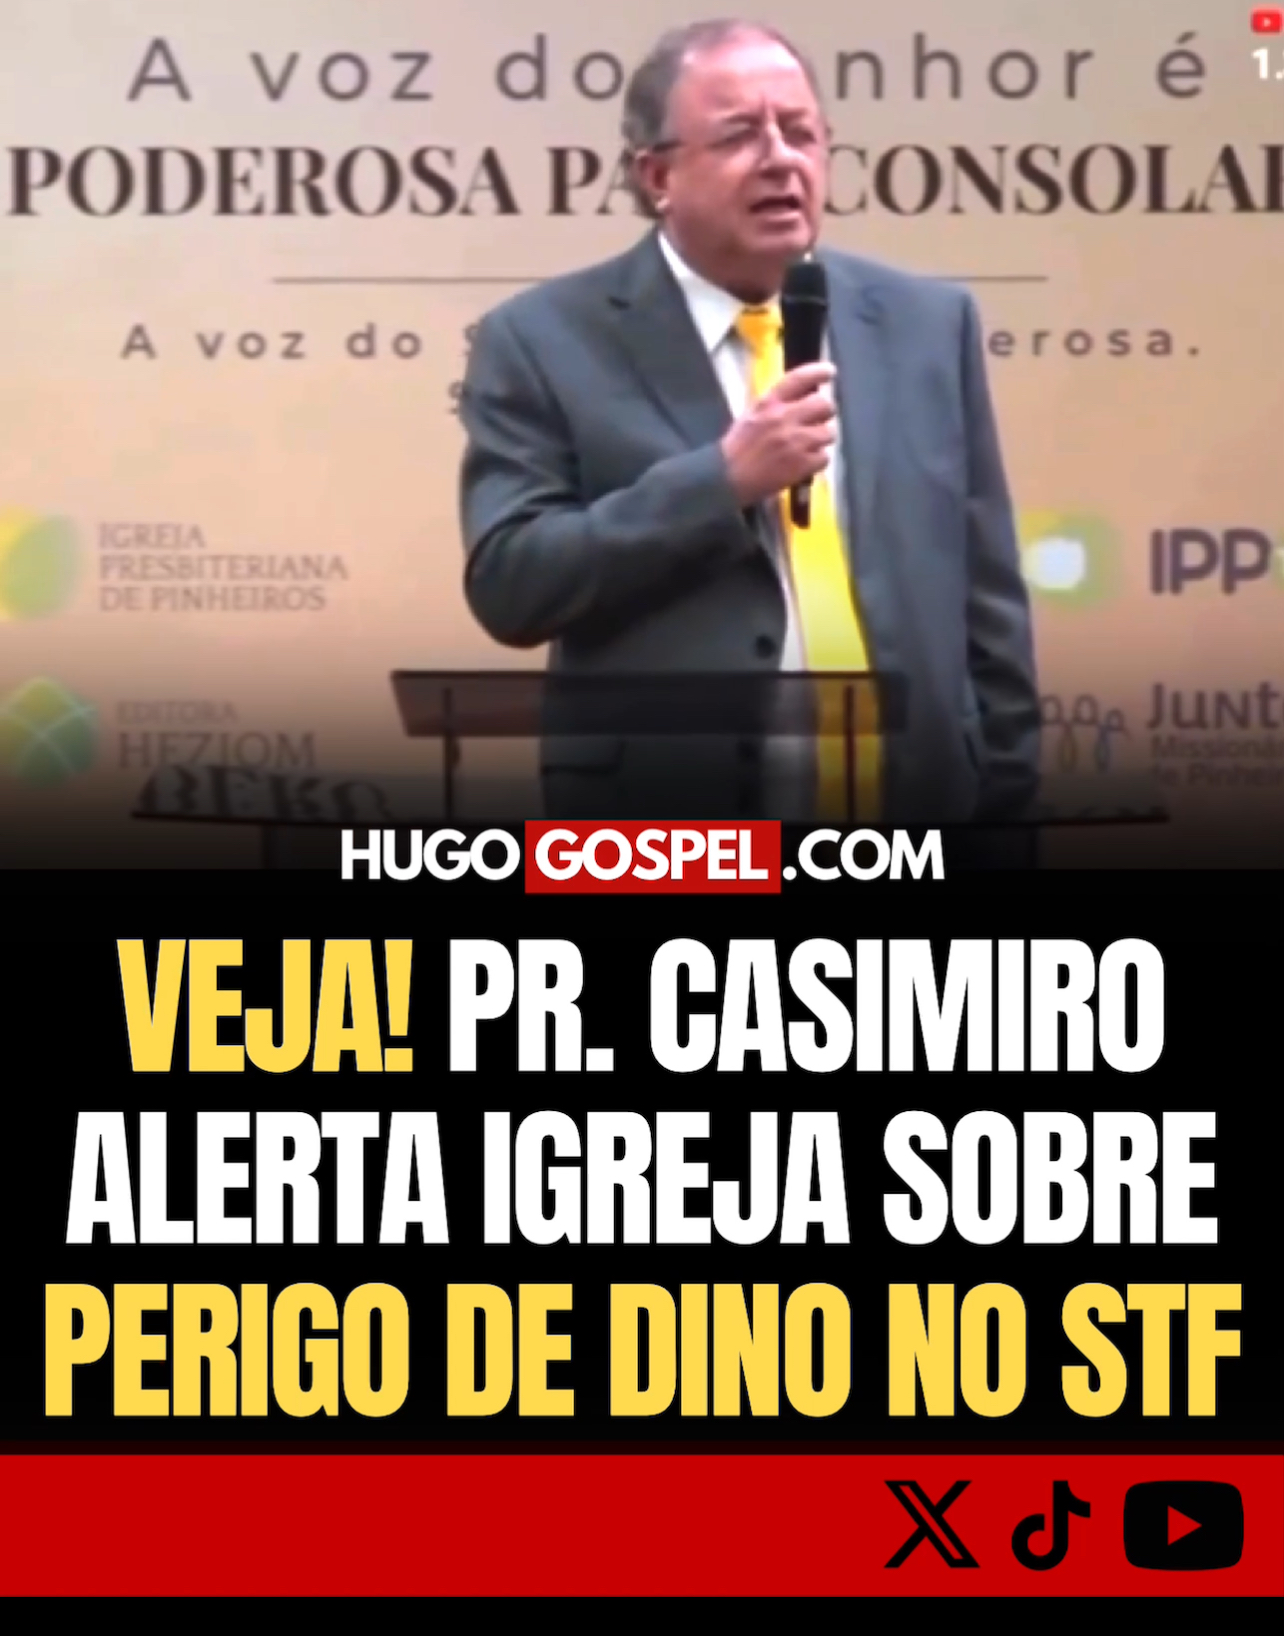 Pastor Casimiro alerta igreja sobre perigo de Dino no STF 